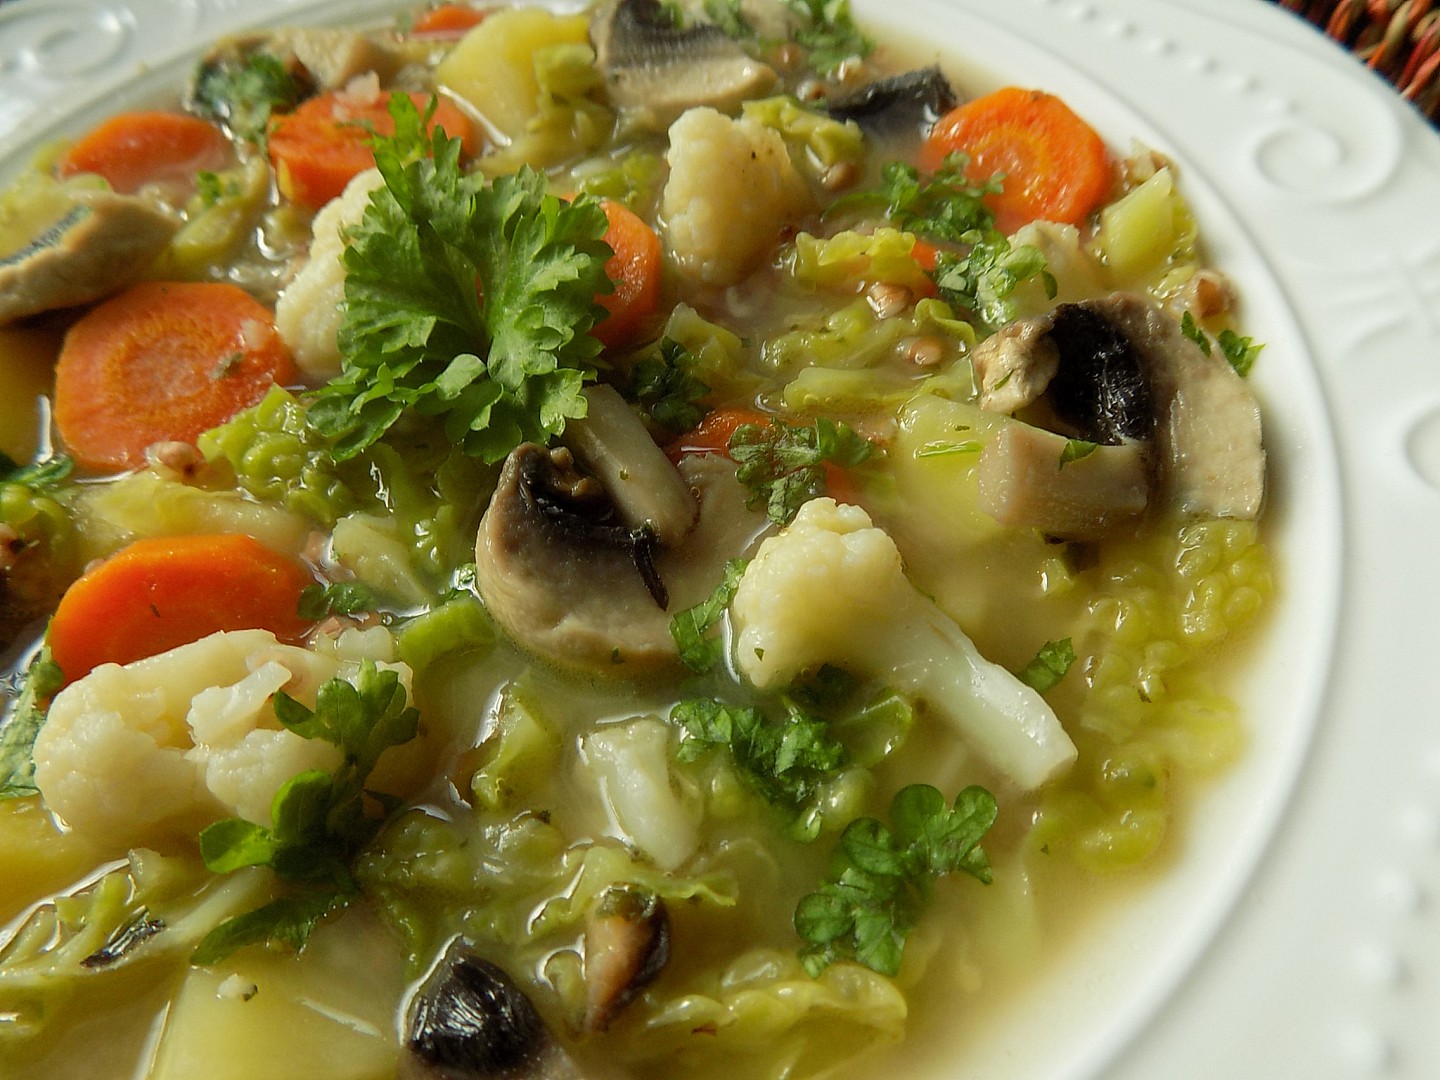 Zeleninová hustá polévka s pohankou